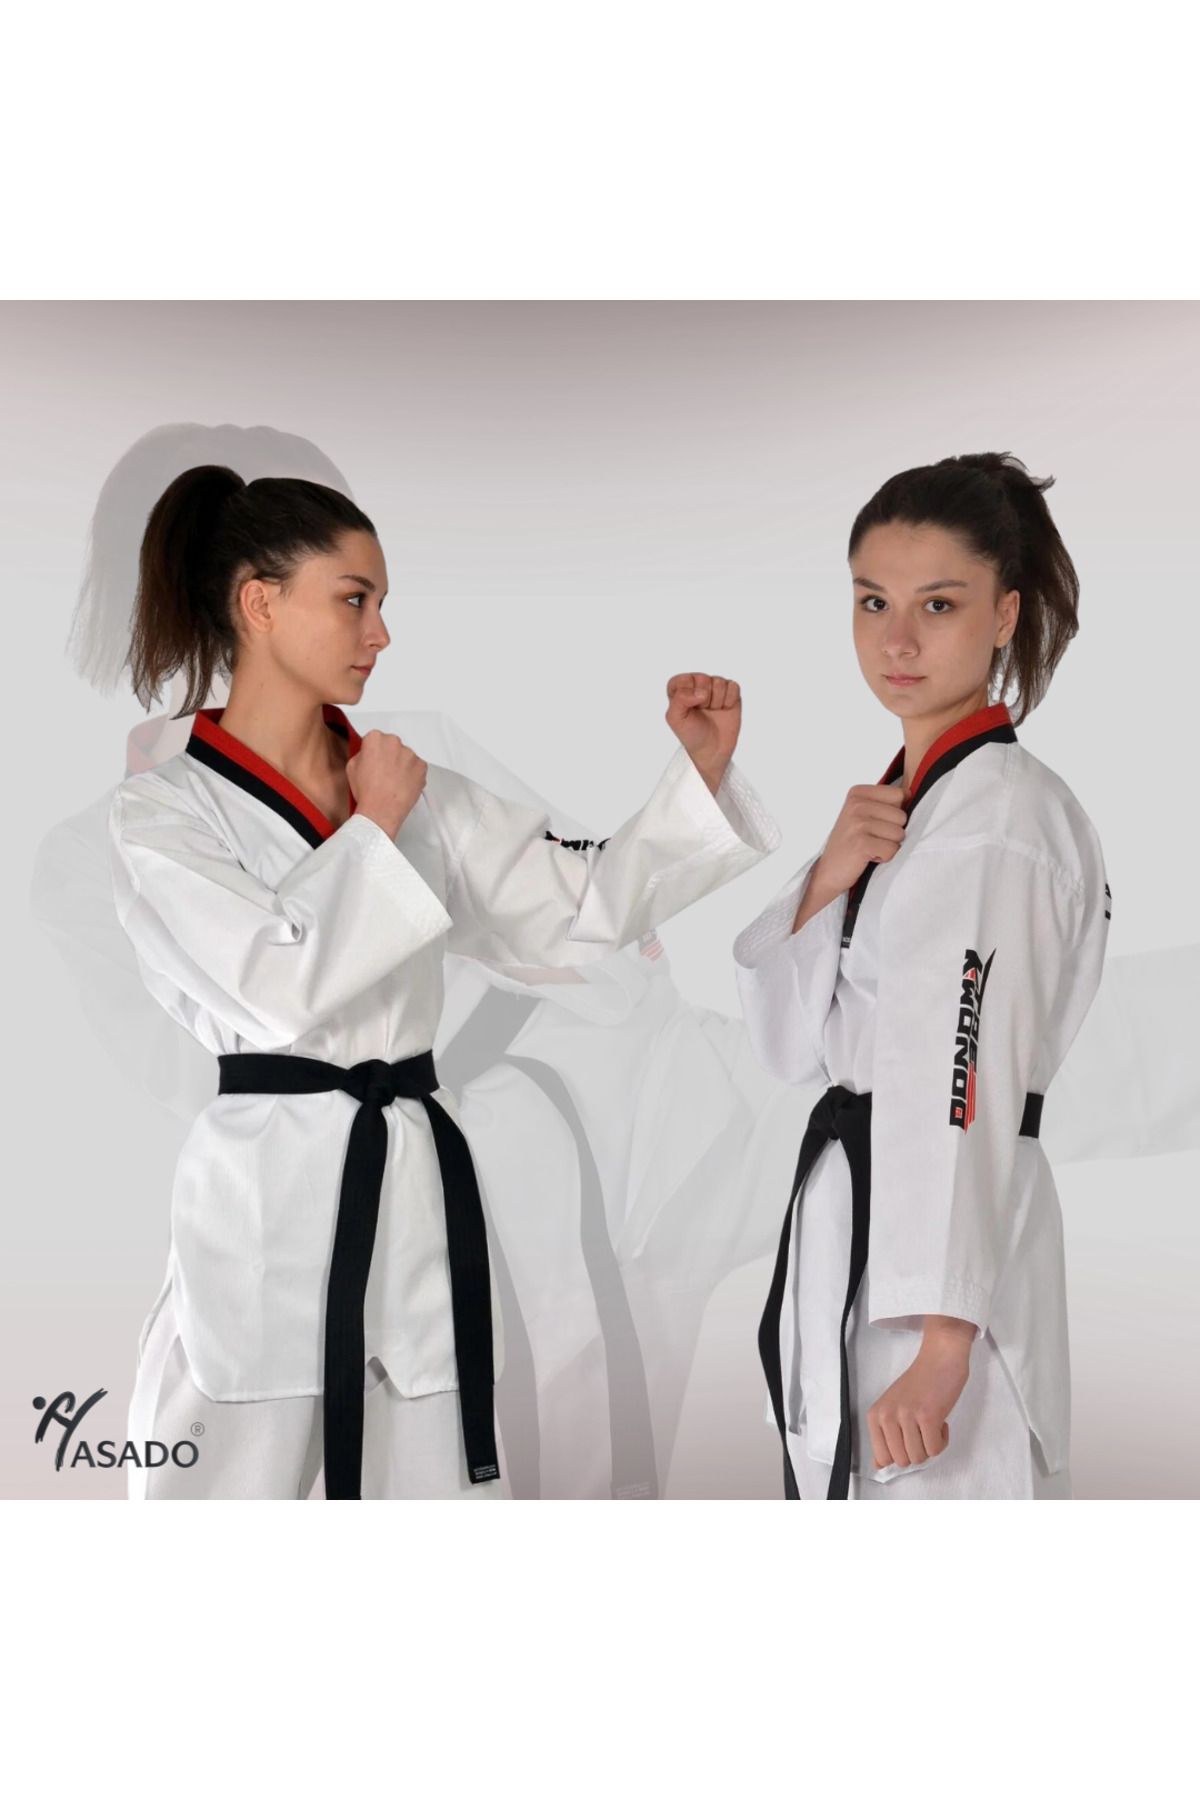 HAŞADO Şeritli Pum Yaka Fitilli Taekwondo Elbisesi Kırmızı-Siyah Yaka